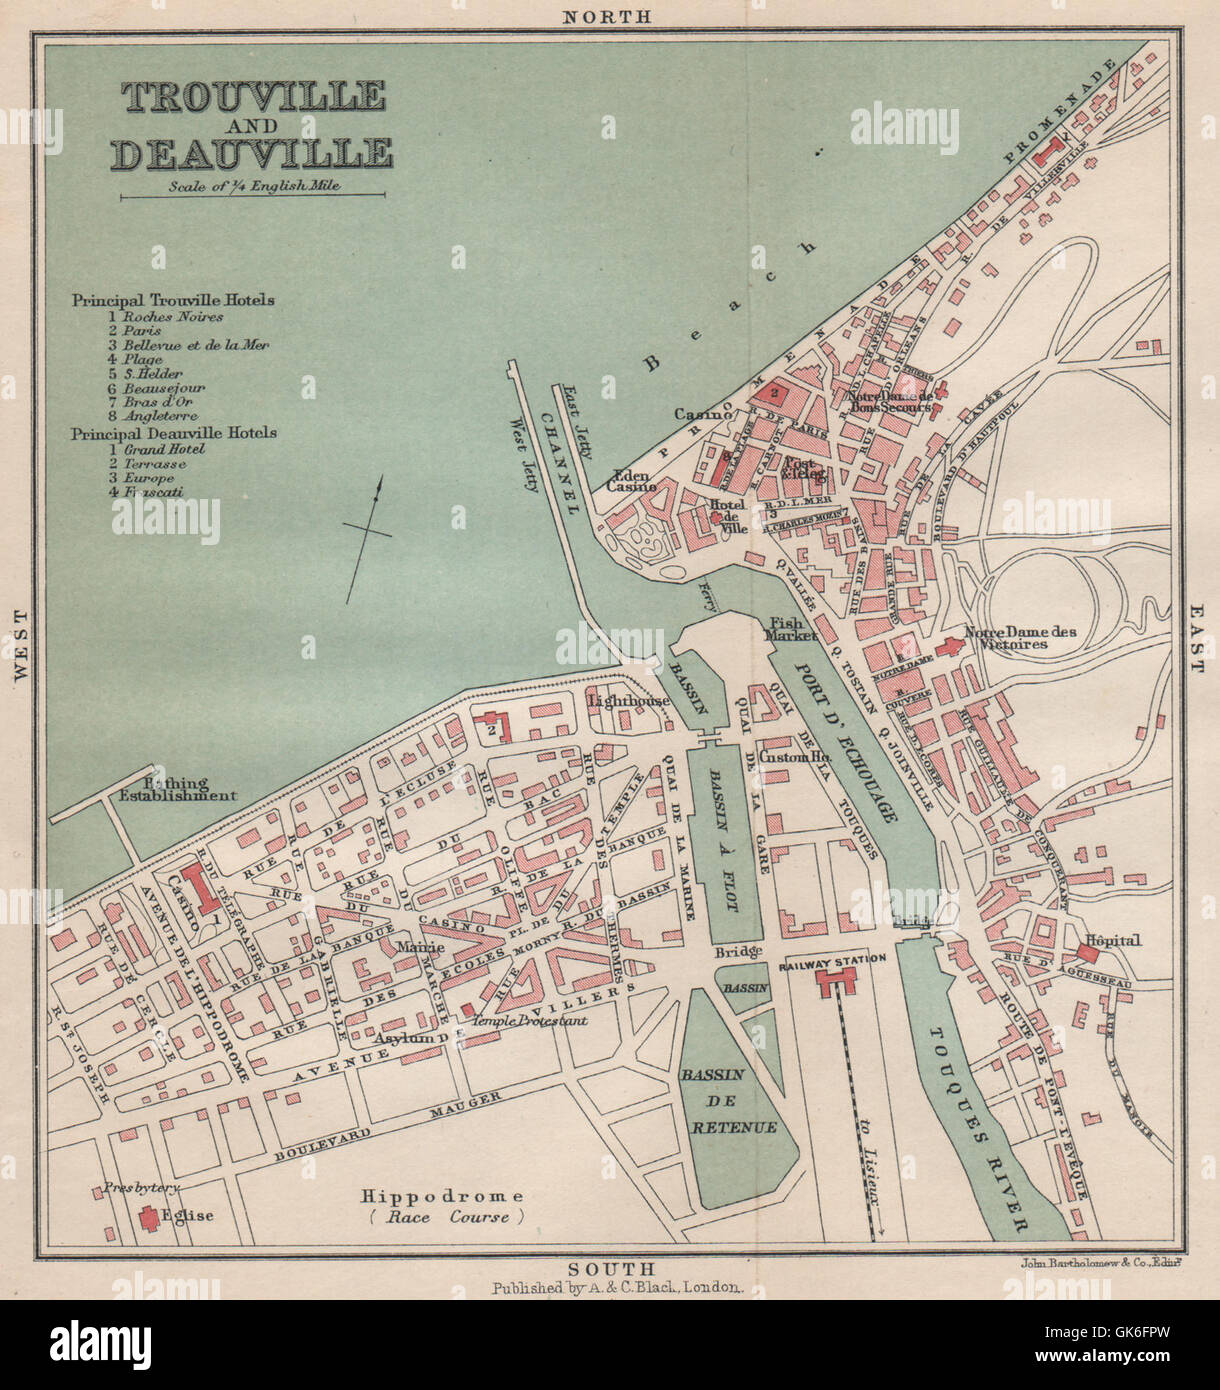 TROUVILLE DEAUVILLE antique town city plan de la ville. Seine-Maritime, 1913 map Stock Photo